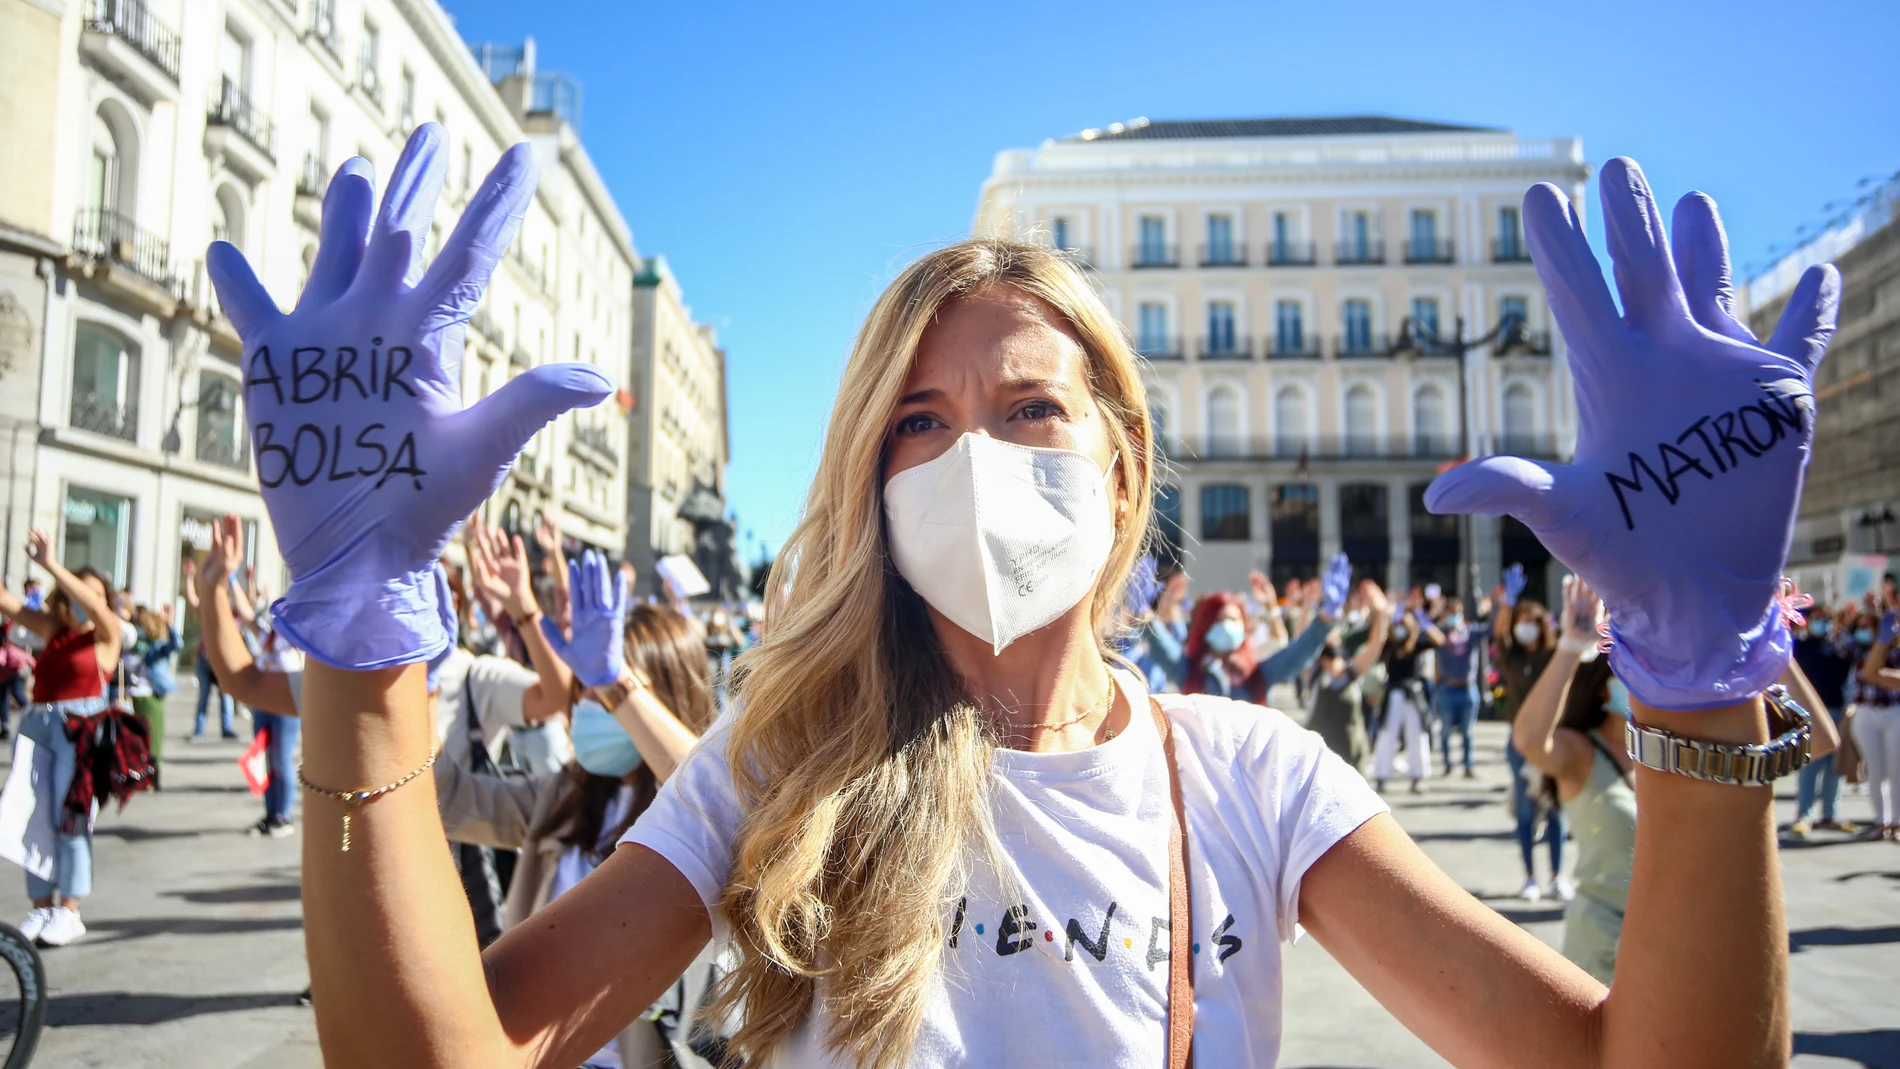 Una enfermera durante la manifestación que bajo el lema "La vocación no justifica la explotación"